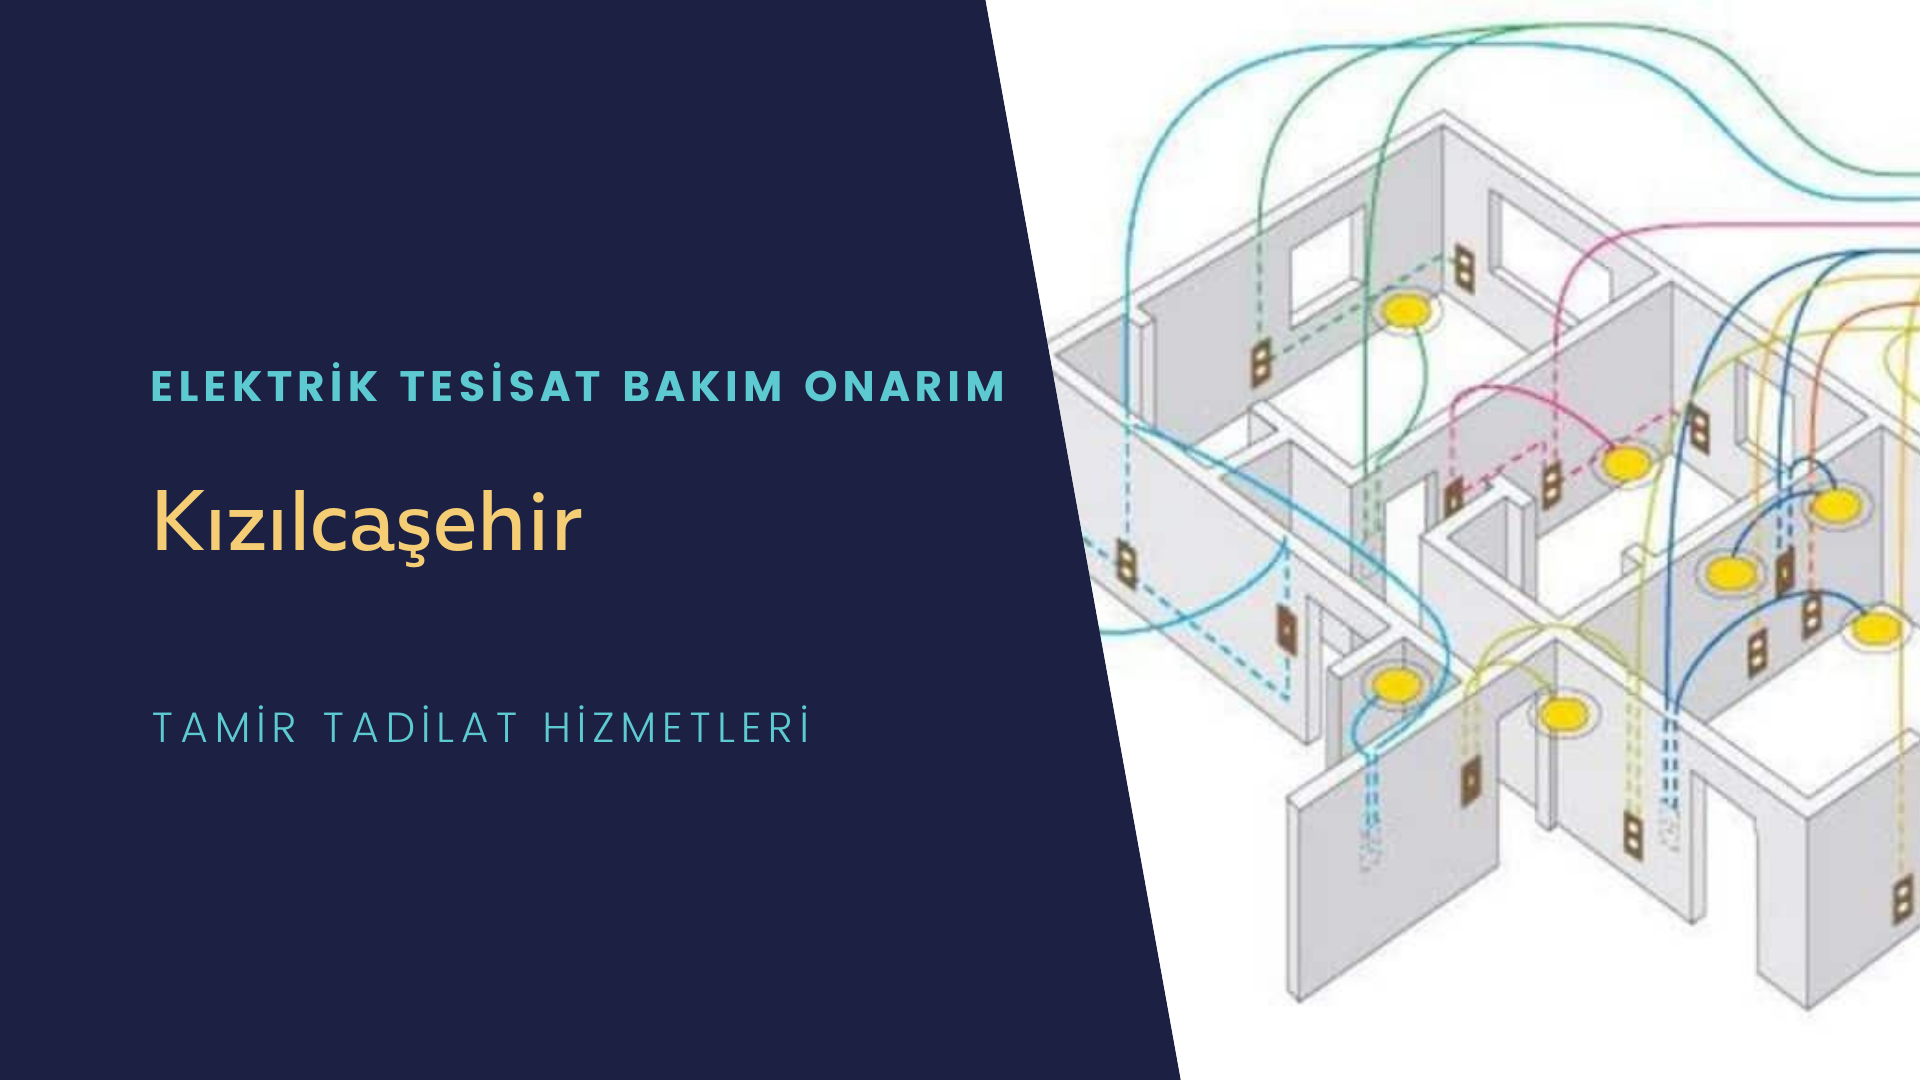 Kızılcaşehir'de elektrik tesisatı ustalarımı arıyorsunuz doğru adrestenizi Kızılcaşehir elektrik tesisatı ustalarımız 7/24 sizlere hizmet vermekten mutluluk duyar.